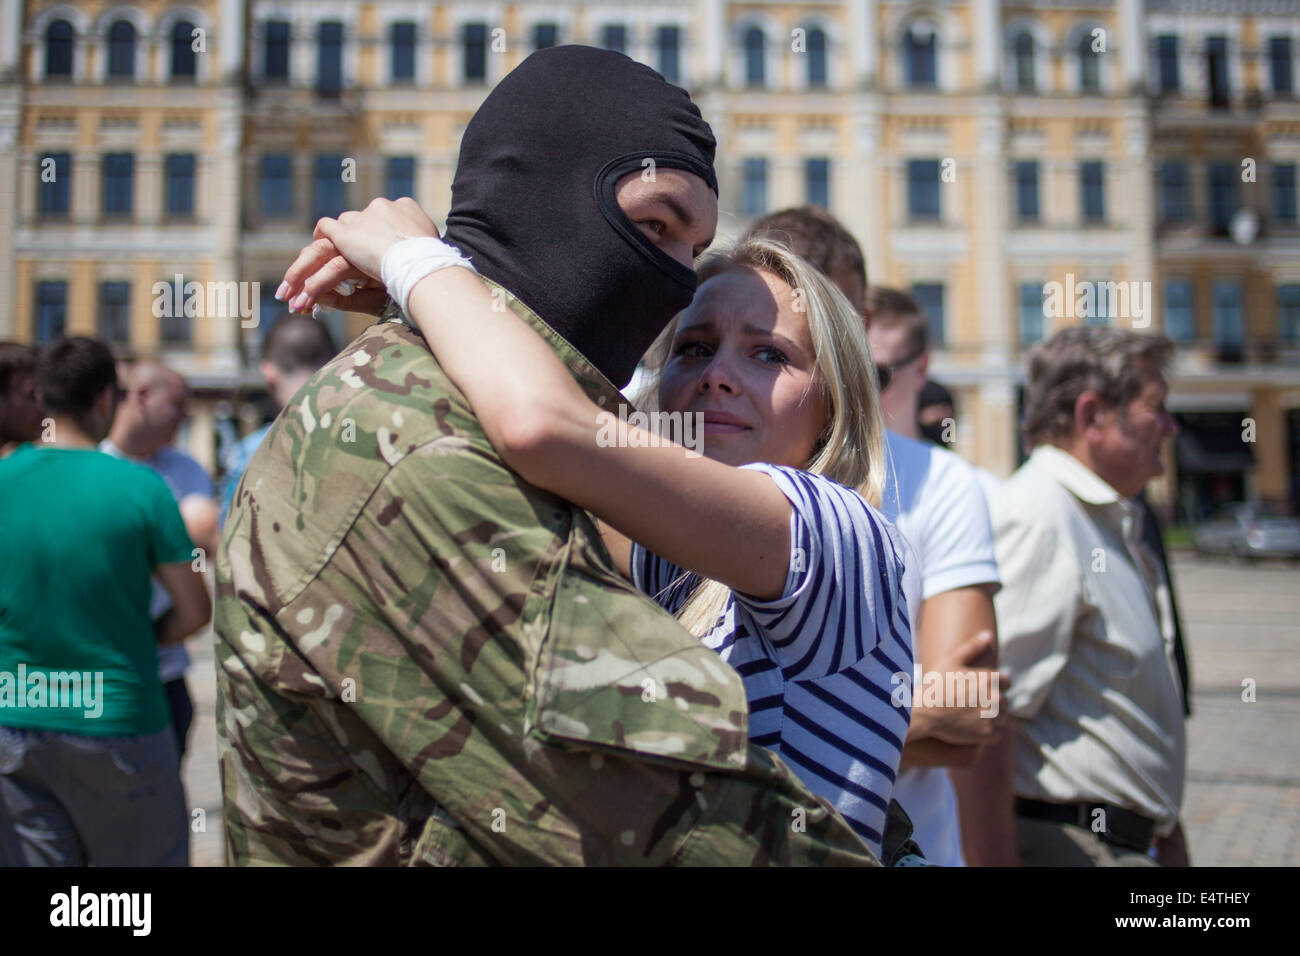 el-soldado-se-abraza-a-su-novia-en-la-vispera-de-su-partida-hacia-el-este-de-ucrania-el-nuevo-batallon-del-ejercito-ucraniano-azov-son-enviados-a-la-region-oriental-de-ucrania-donde-los-tres-meses-de-violentos-enfrentamientos-entre-el-ejercito-de-ucrania-y-militantes-pro-rusos-todavia-en-curso-oleg-pereverzev-pacific-press-alamy-live-news-e4they.jpg